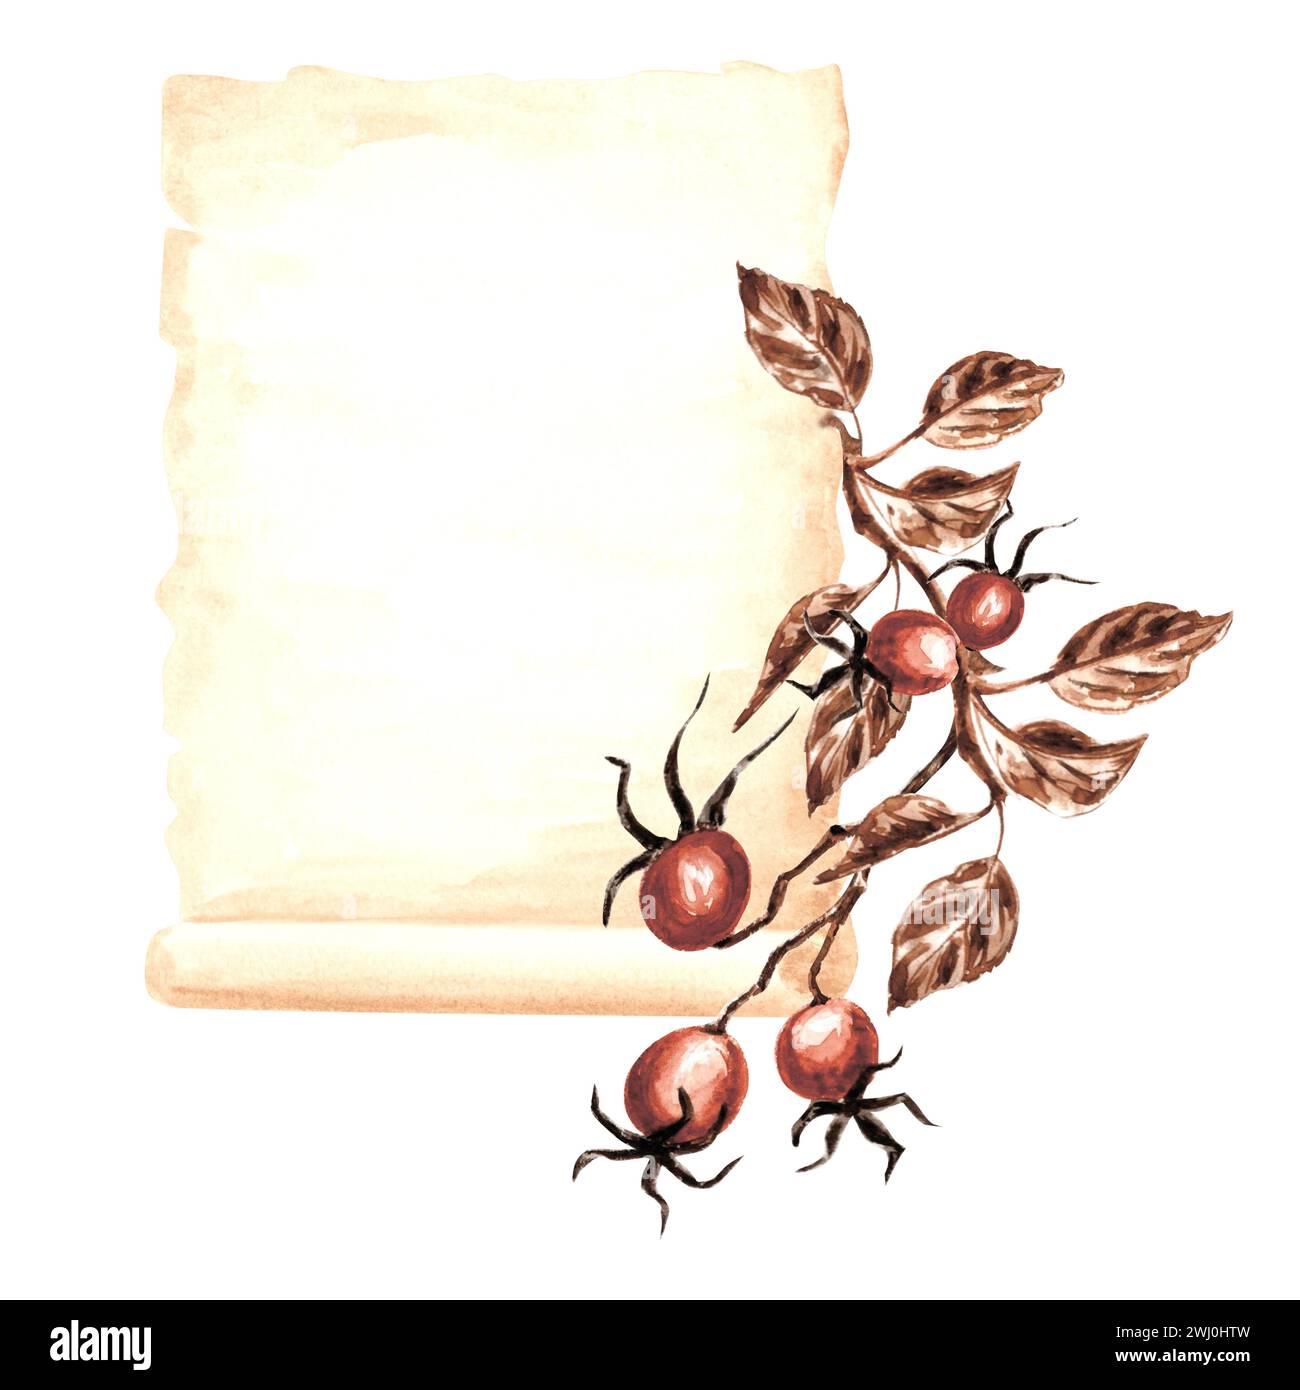 Blatt Pergamentpapier, Hagebuttenzweig mit Früchten und Blättern. Vorlage für altes Schreibmaterial. Handgezeichnete Aquarellillustration. Stockfoto